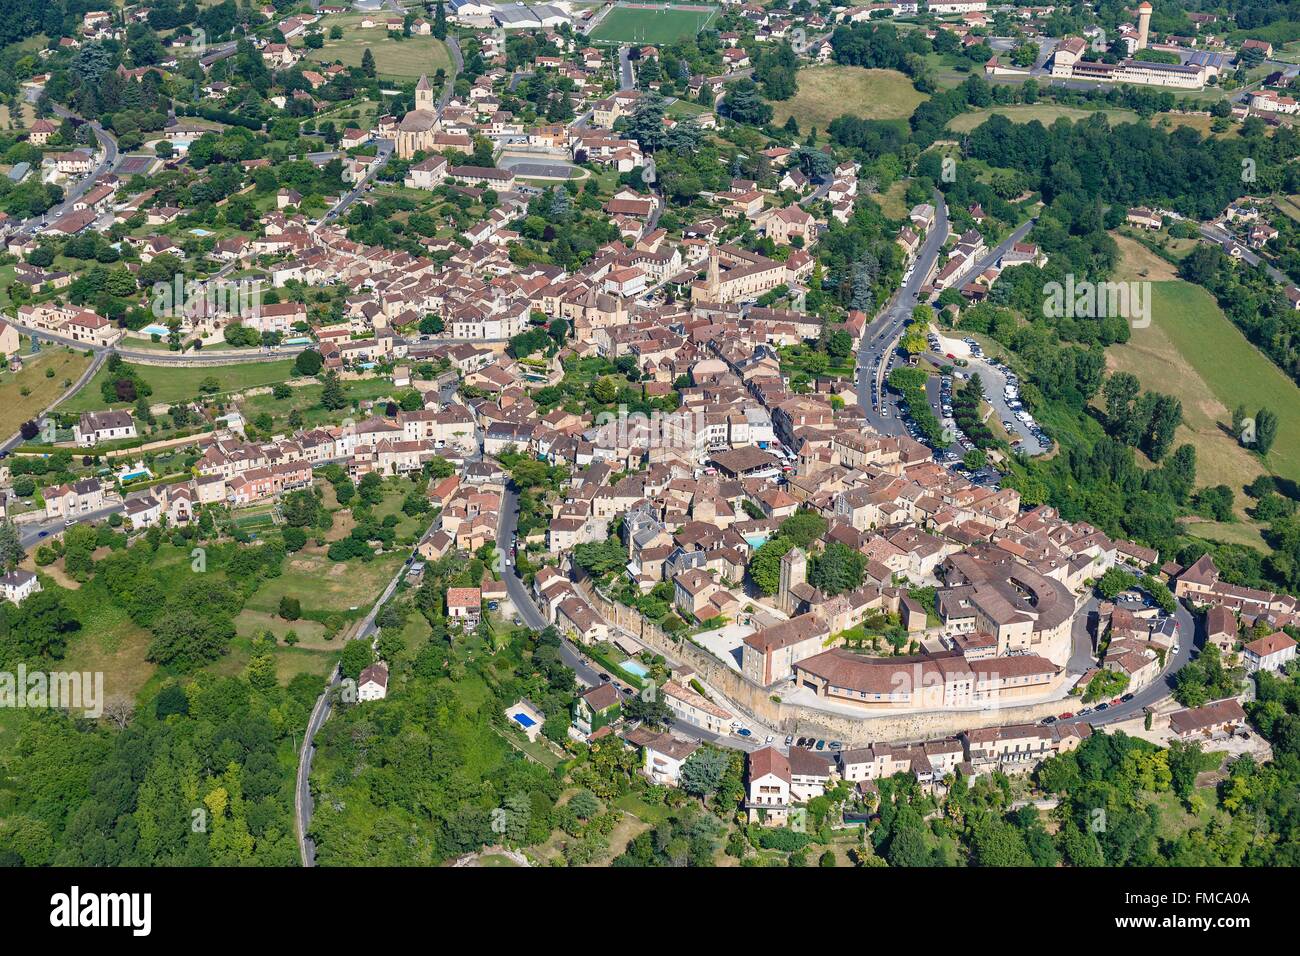 France, Dordogne, Belves, labelled Les Plus Beaux Villages de France (The Most Beautiful Villages of France), the village Stock Photo